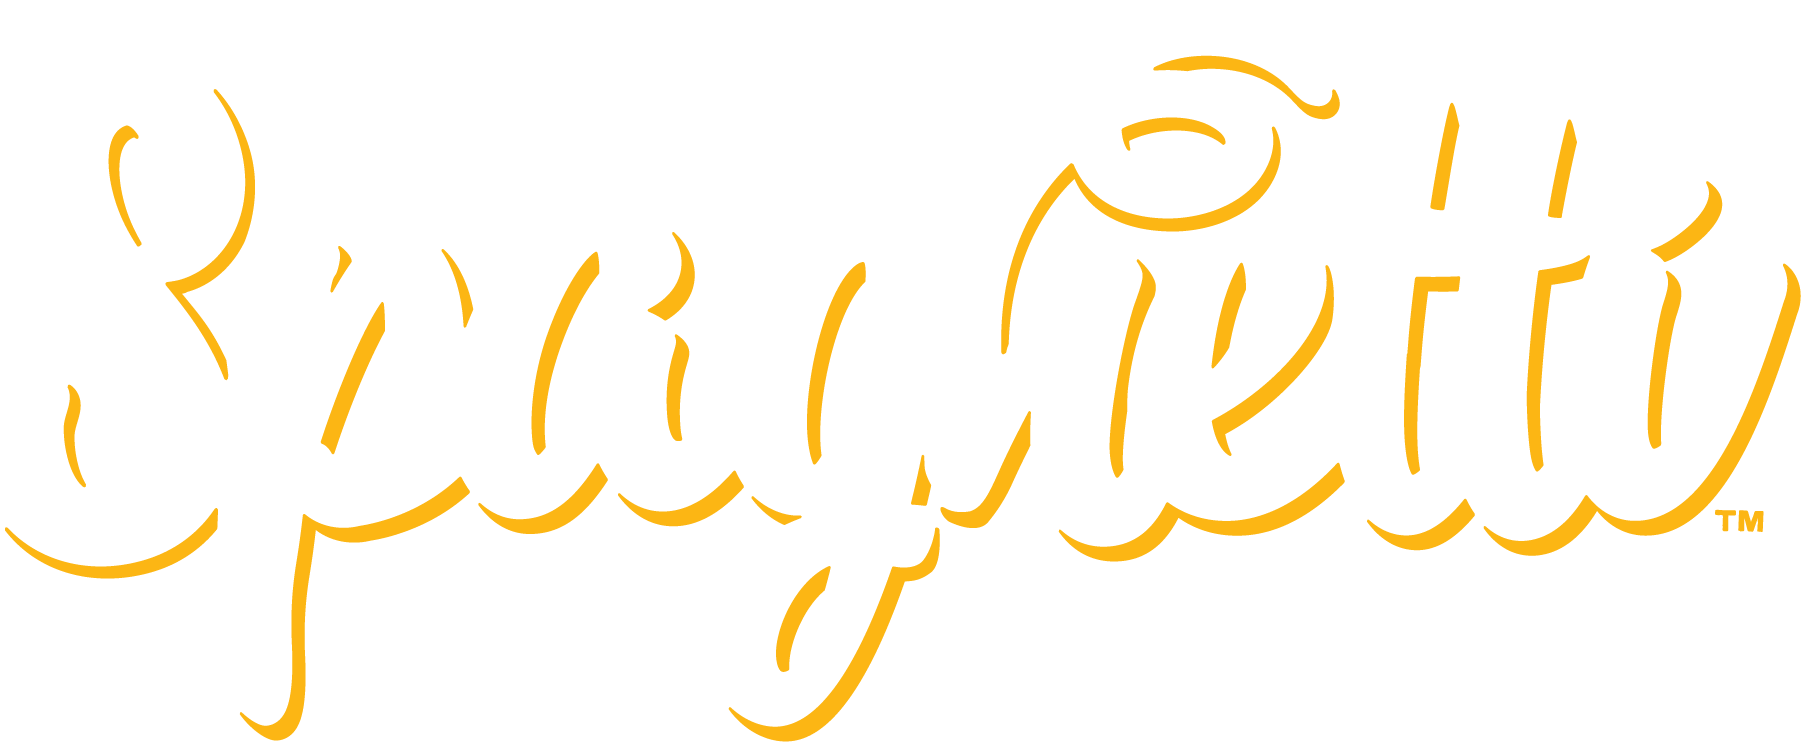 Already_Spaghetti-Logo-White-Yellow